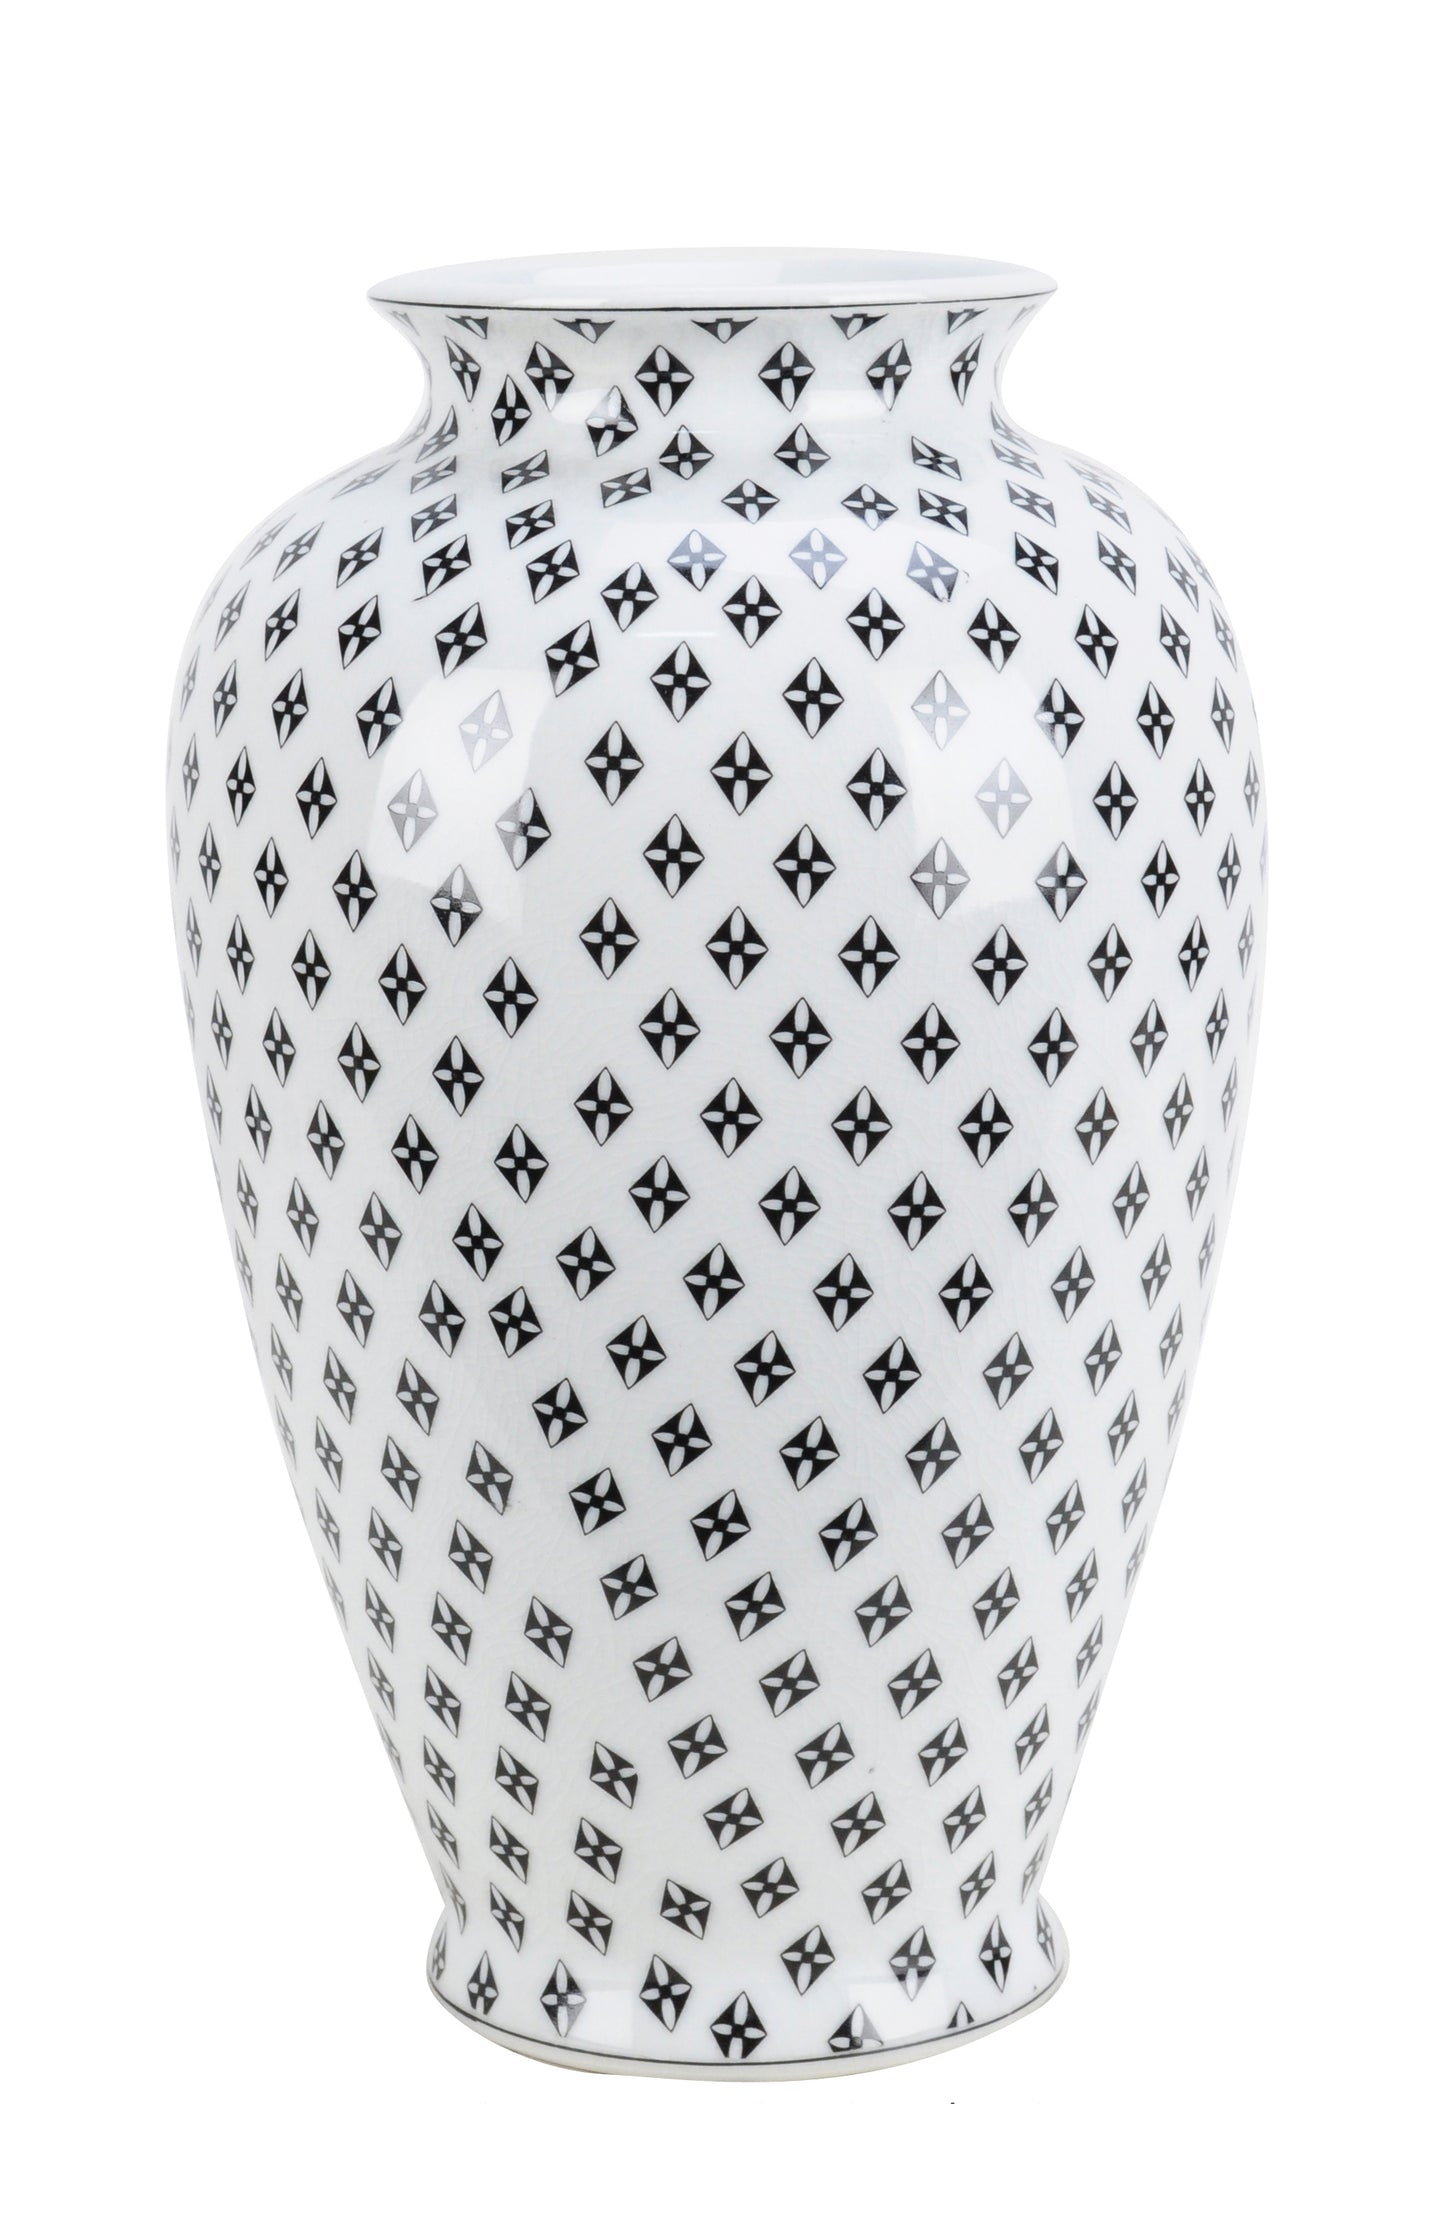 Black and White Checkered Pattern Ceramic Vase - 30cm